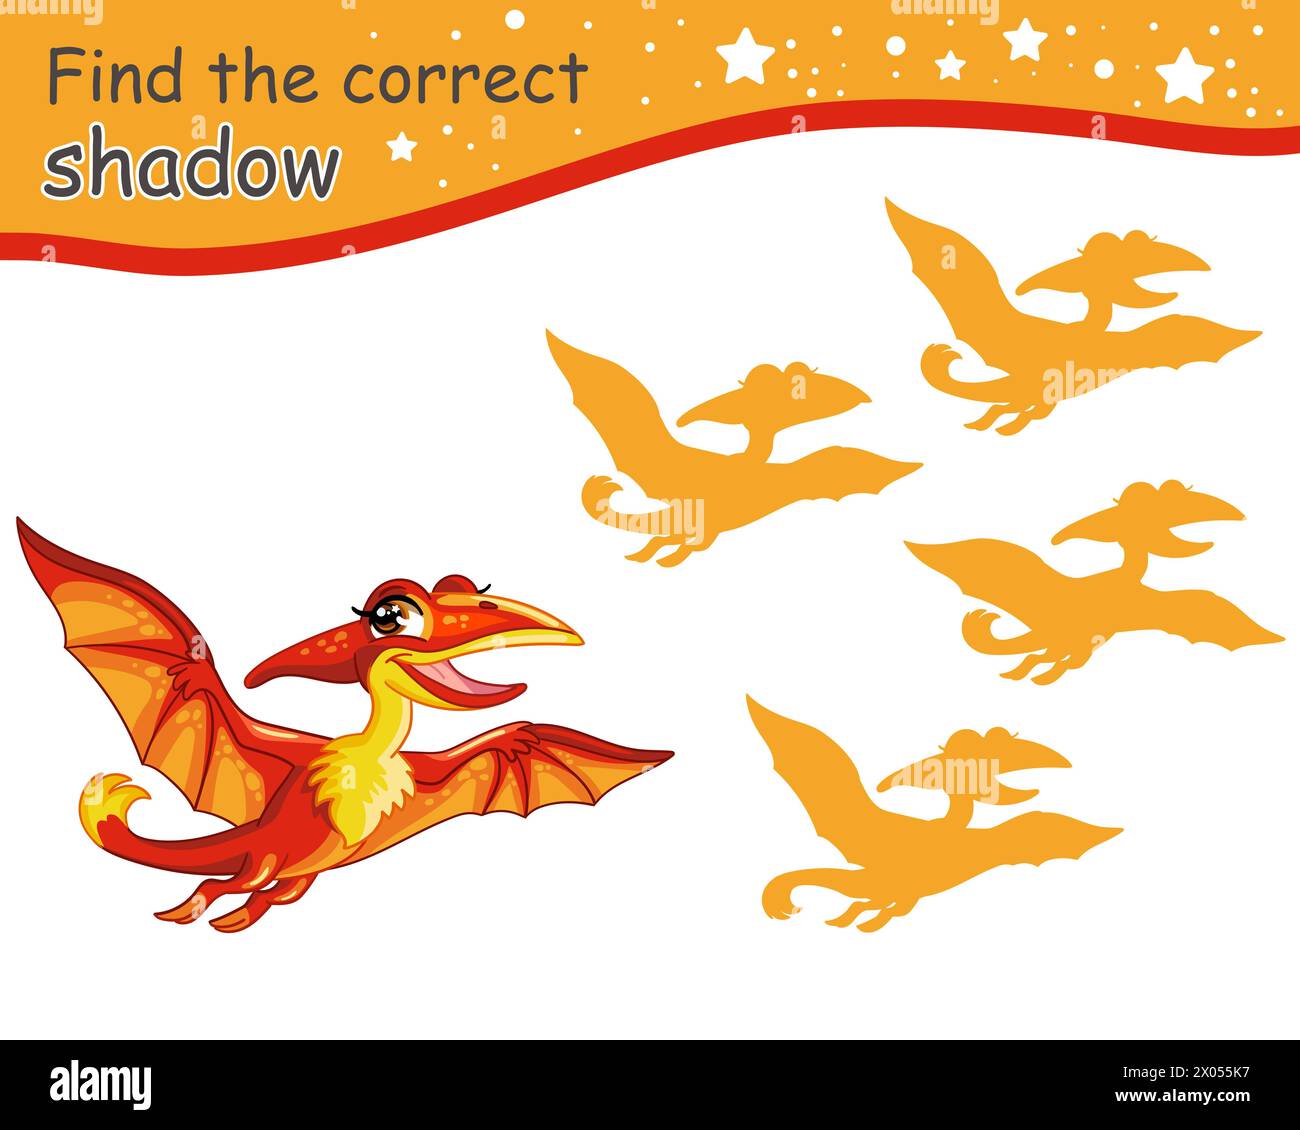 Suchen Sie den richtigen Schatten. Niedlicher Cartoon fliegende Pterodactyl-Dinosaurier. Pädagogisches Matching-Spiel für Kinder mit Zeichentrickfigur. Aktivität, Logikspiel, le Stock Vektor